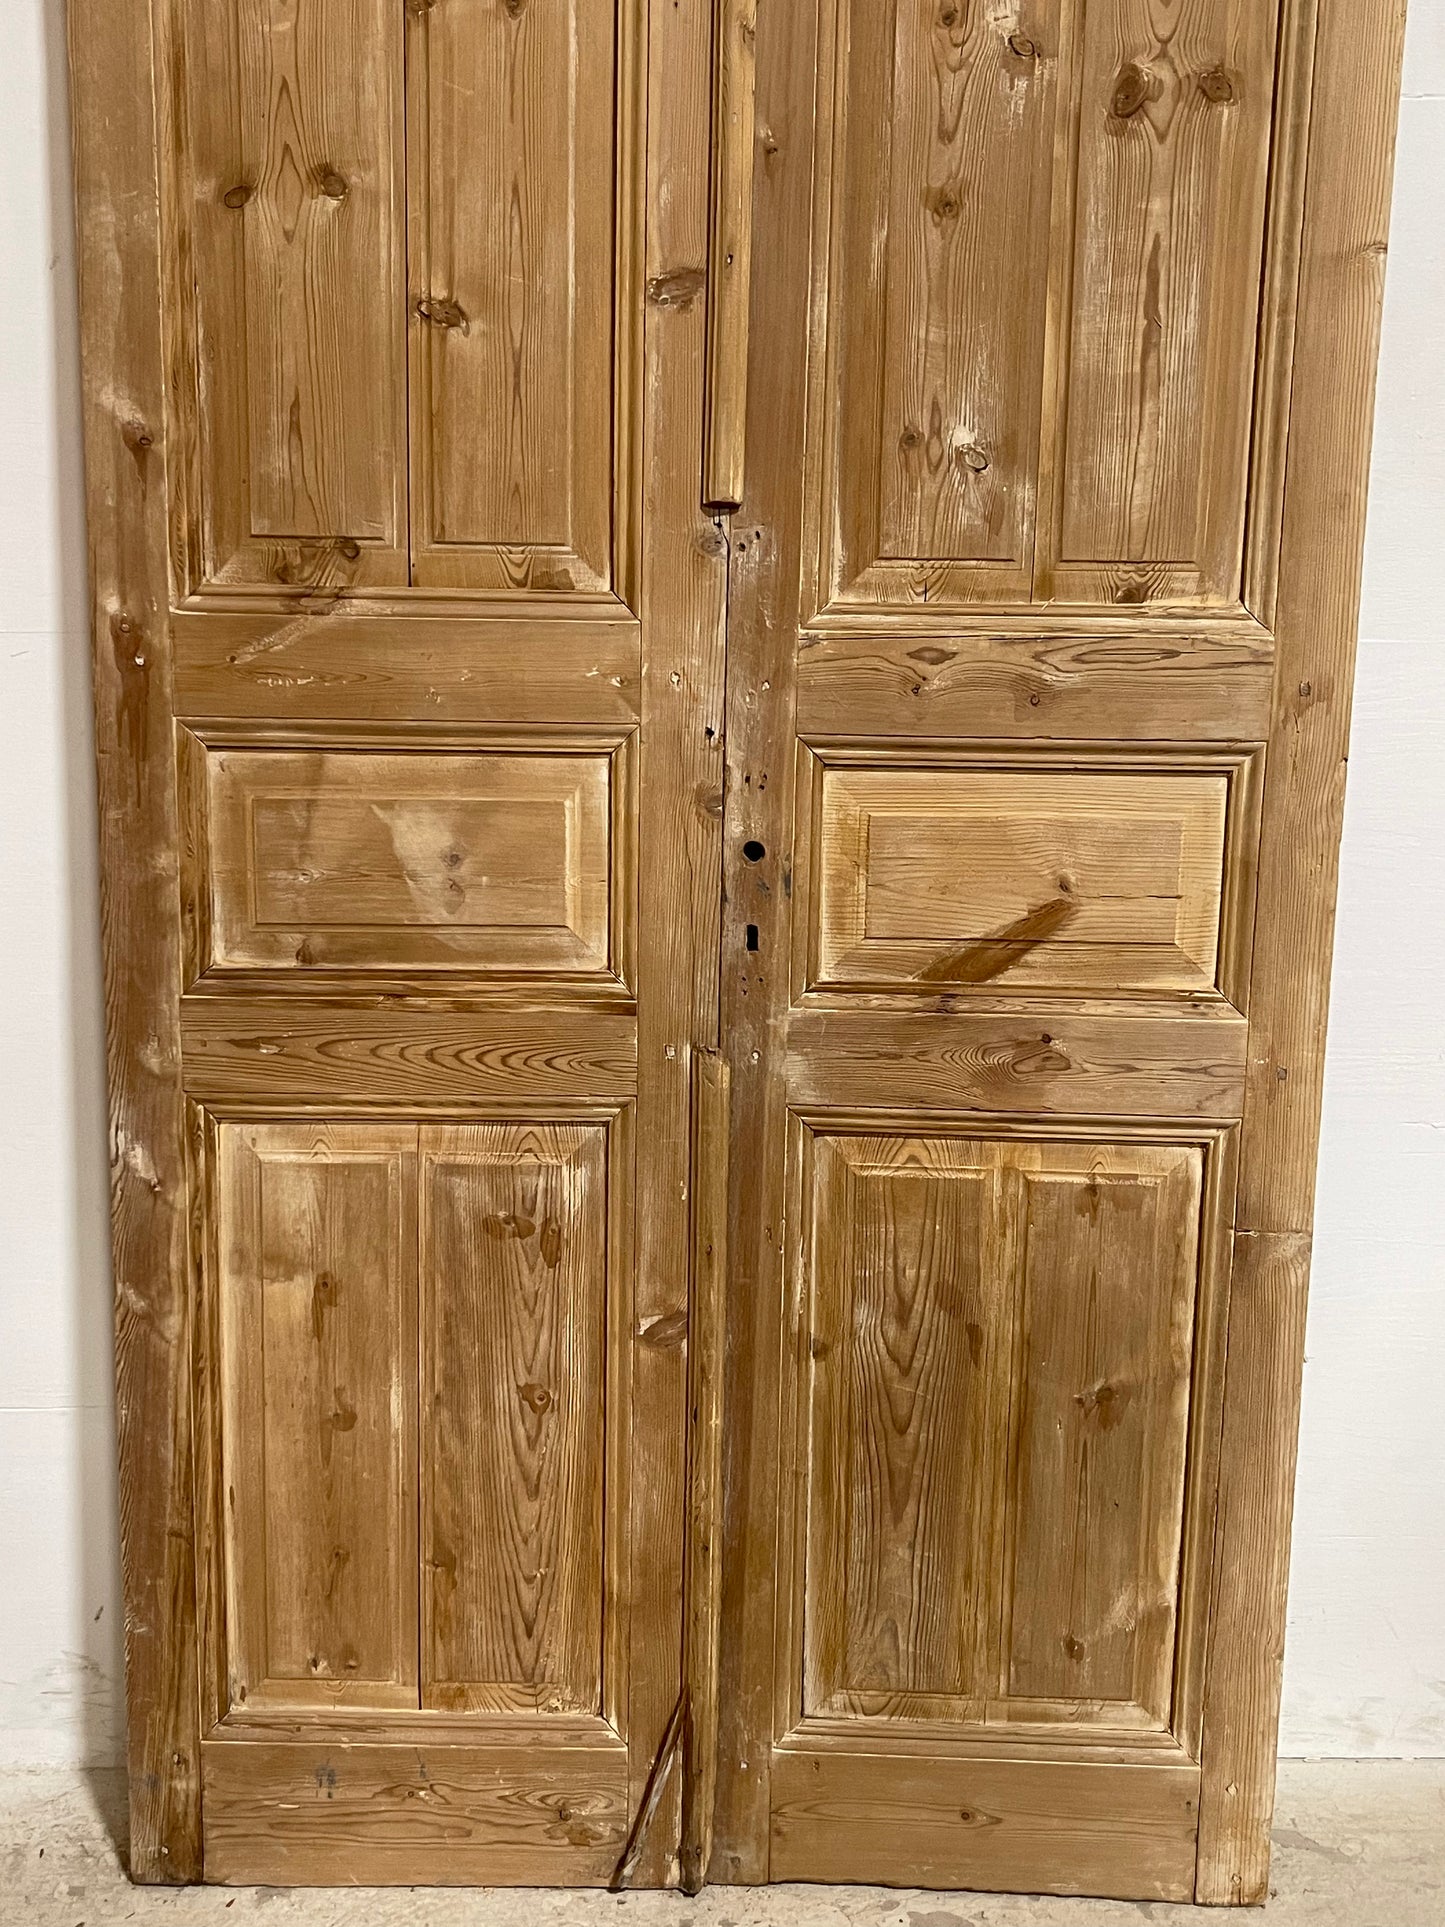 Antique French panel Doors (95.5x44.25) J651